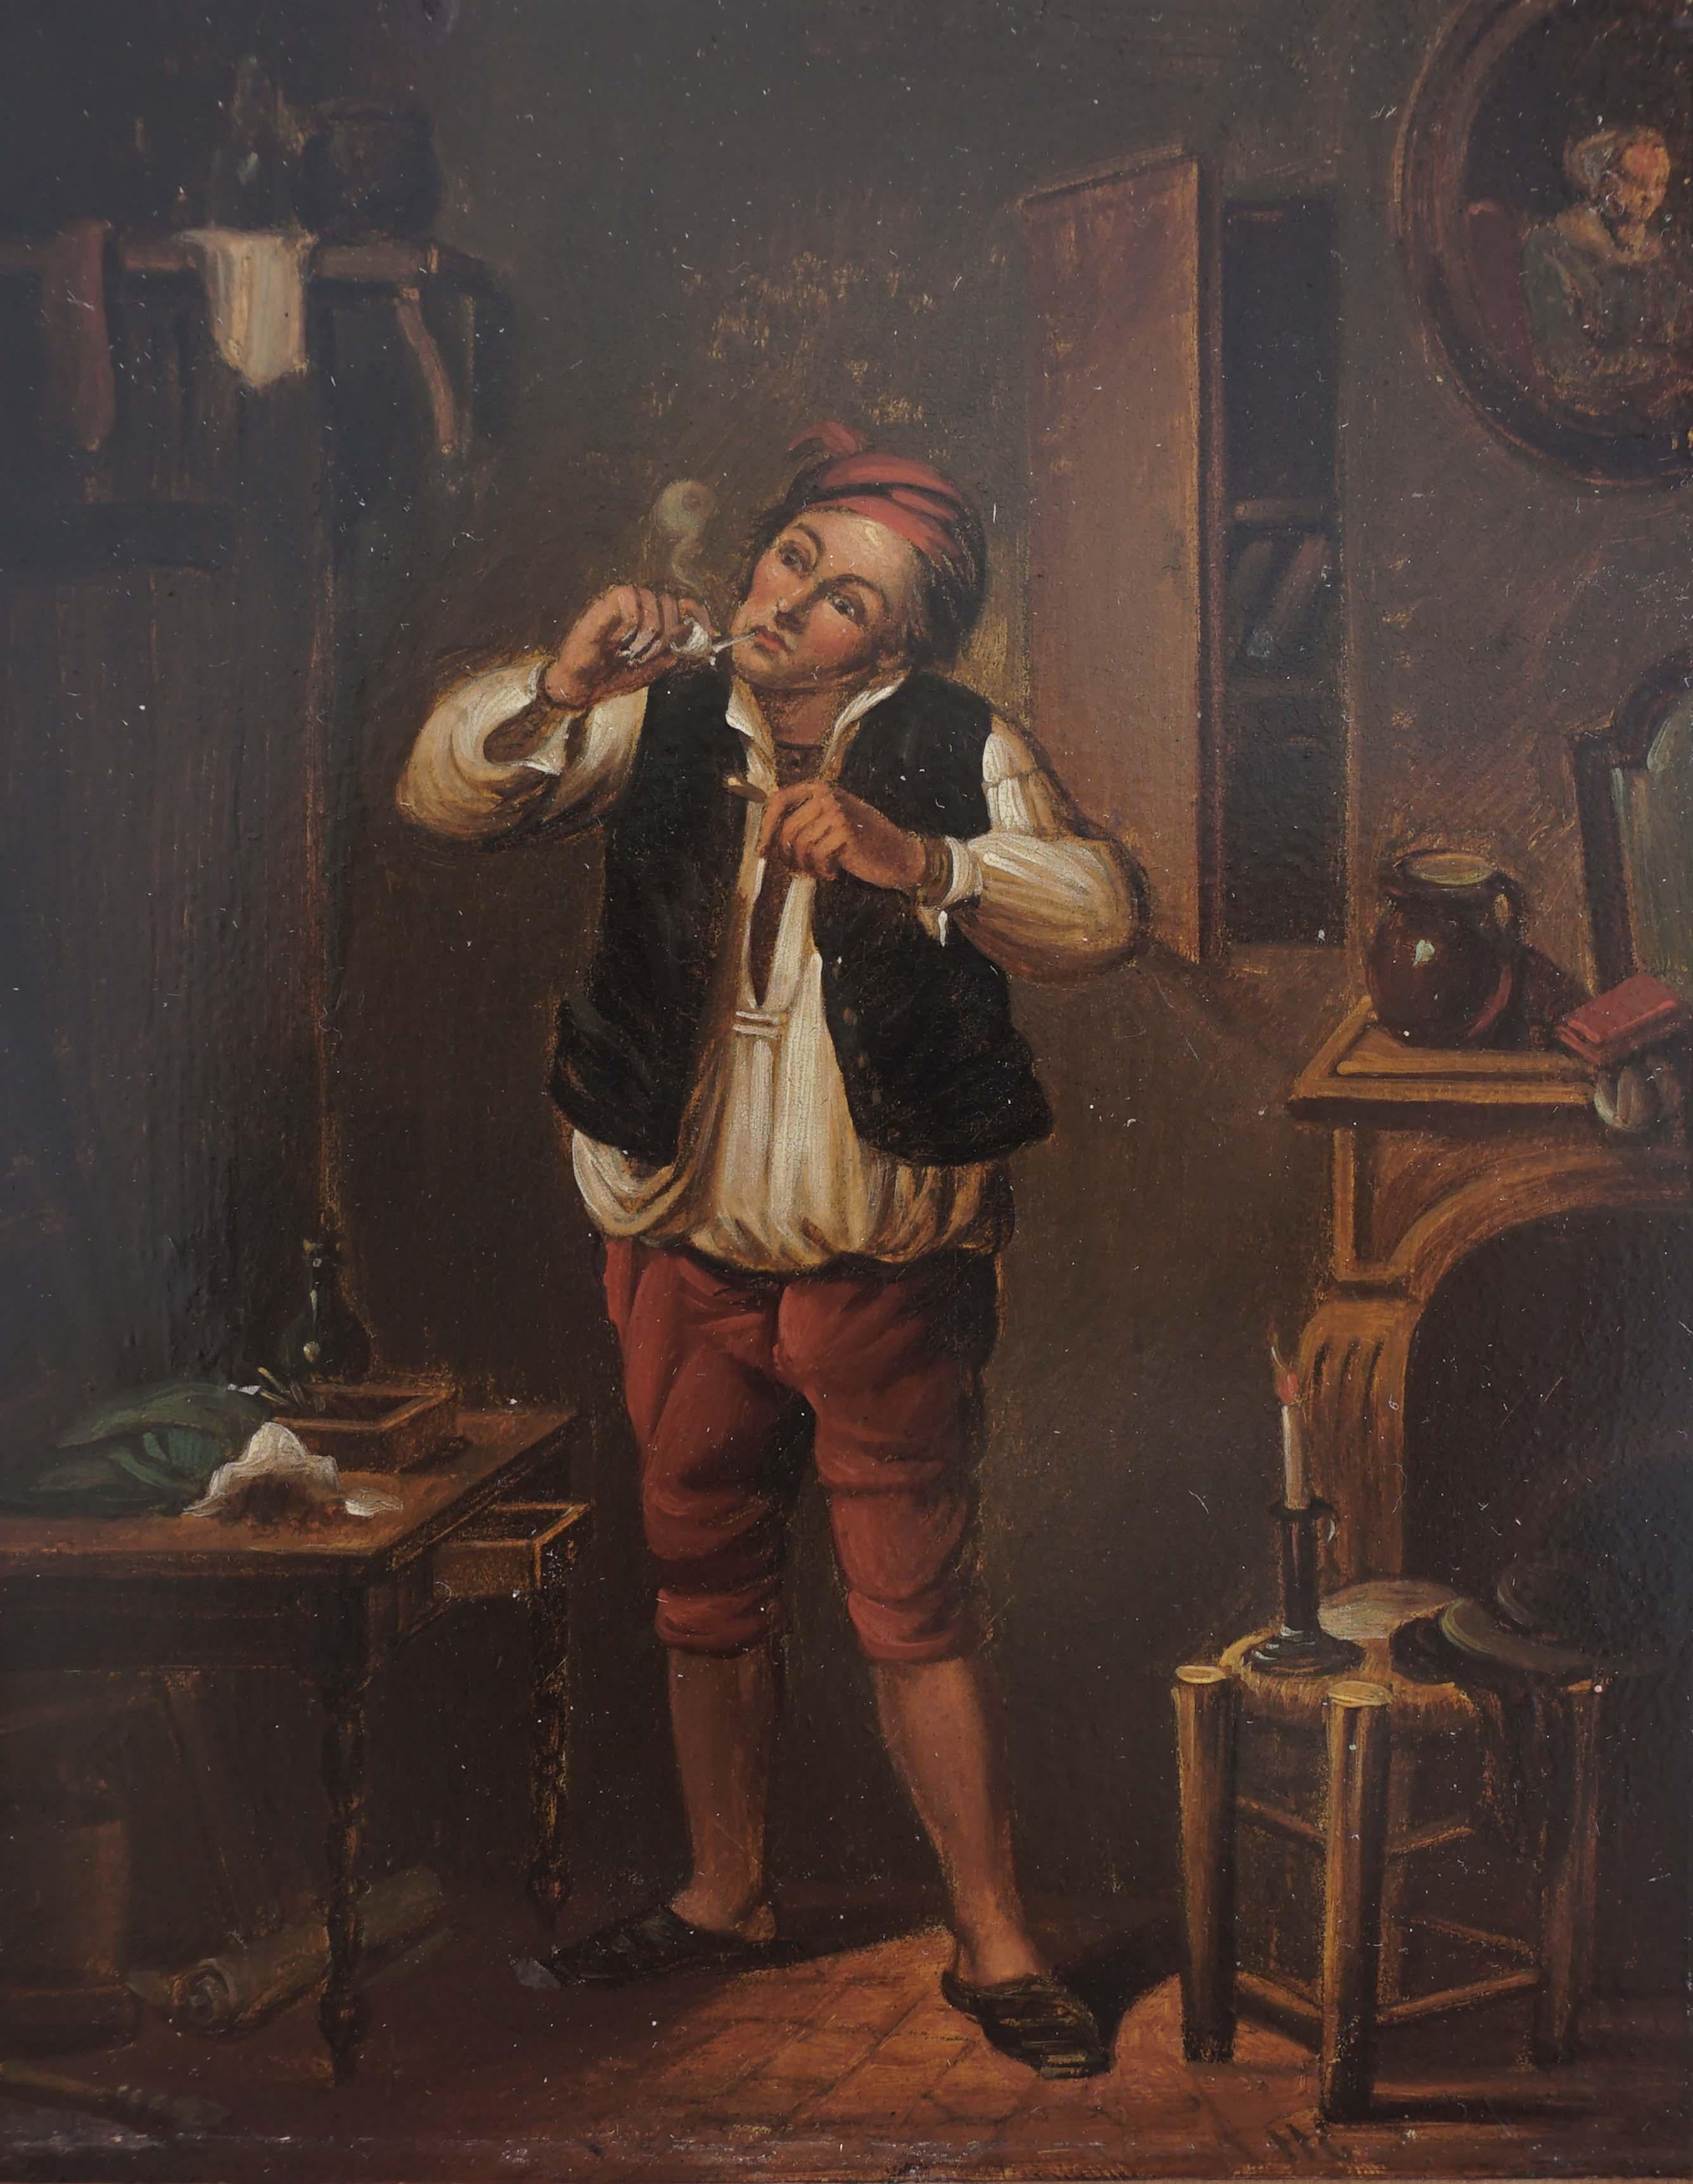 Le fumeur de Pipe - Peinture de genre du 17e siècle